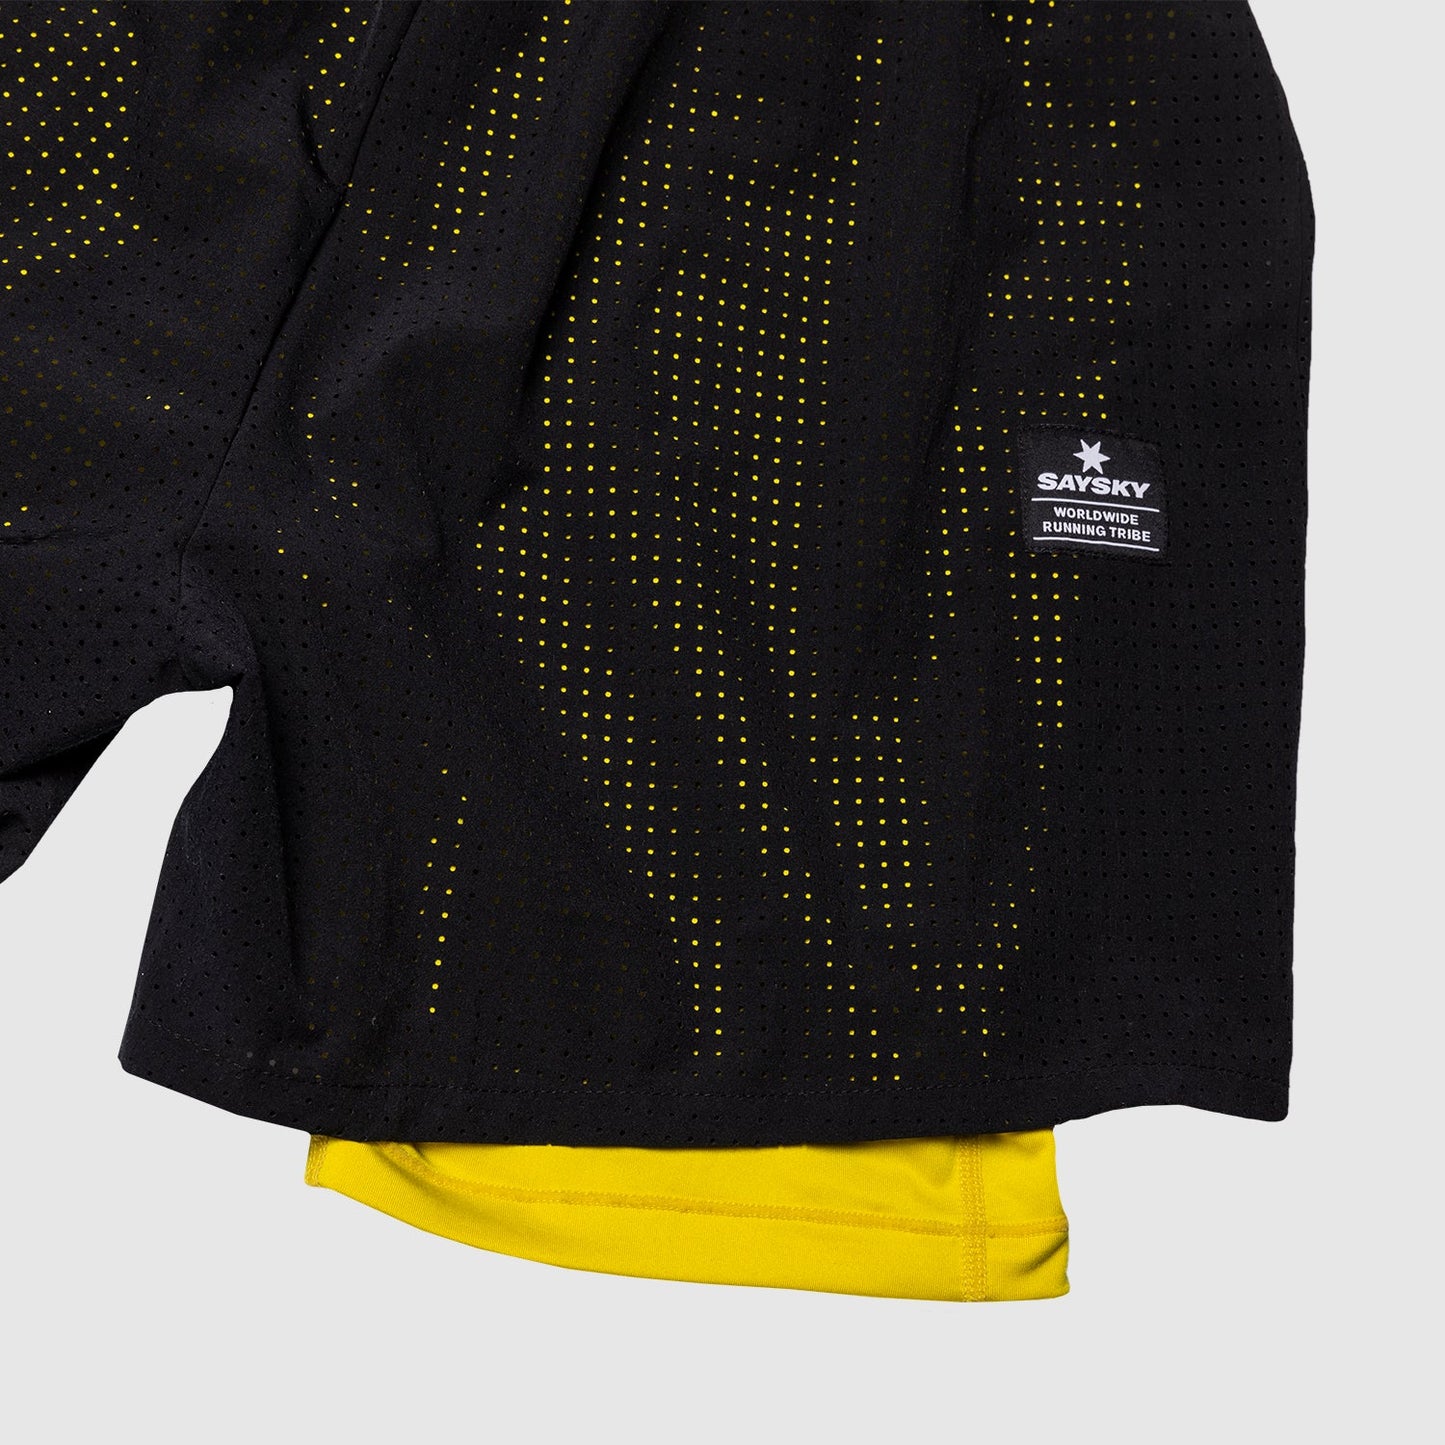 ランニングショーツ HMRSH05 2-in-1 Shorts - Black/Empire Yellow [ユニセックス]